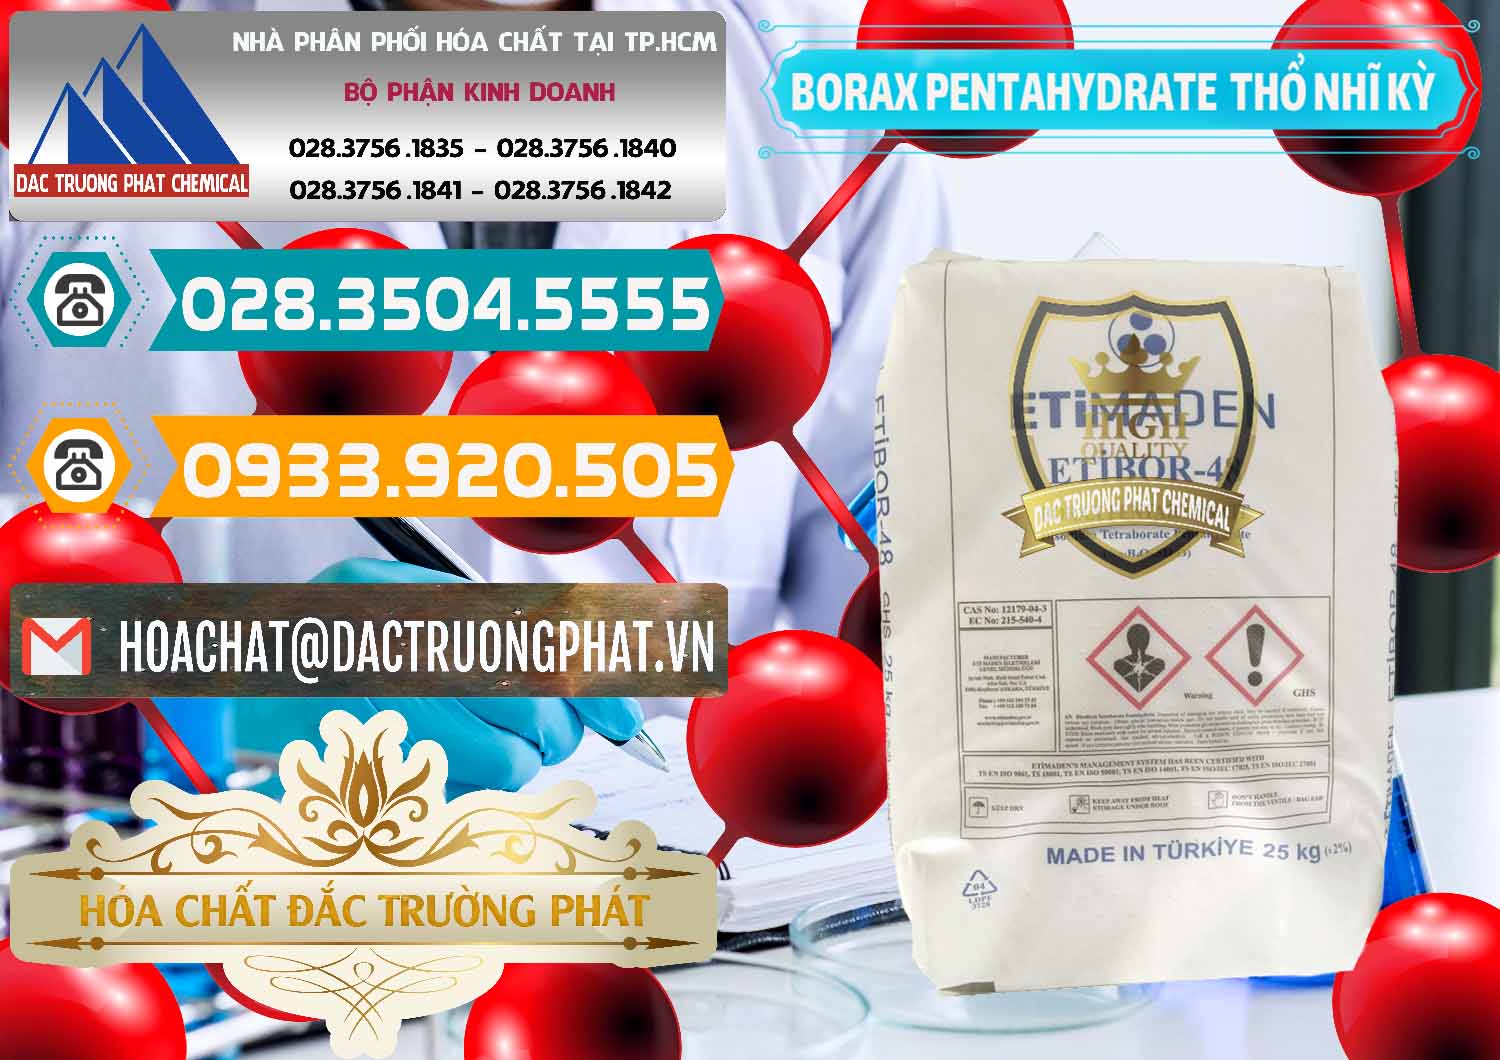 Đơn vị bán - phân phối Borax Pentahydrate Thổ Nhĩ Kỳ Turkey - 0431 - Đơn vị cung cấp - phân phối hóa chất tại TP.HCM - congtyhoachat.vn